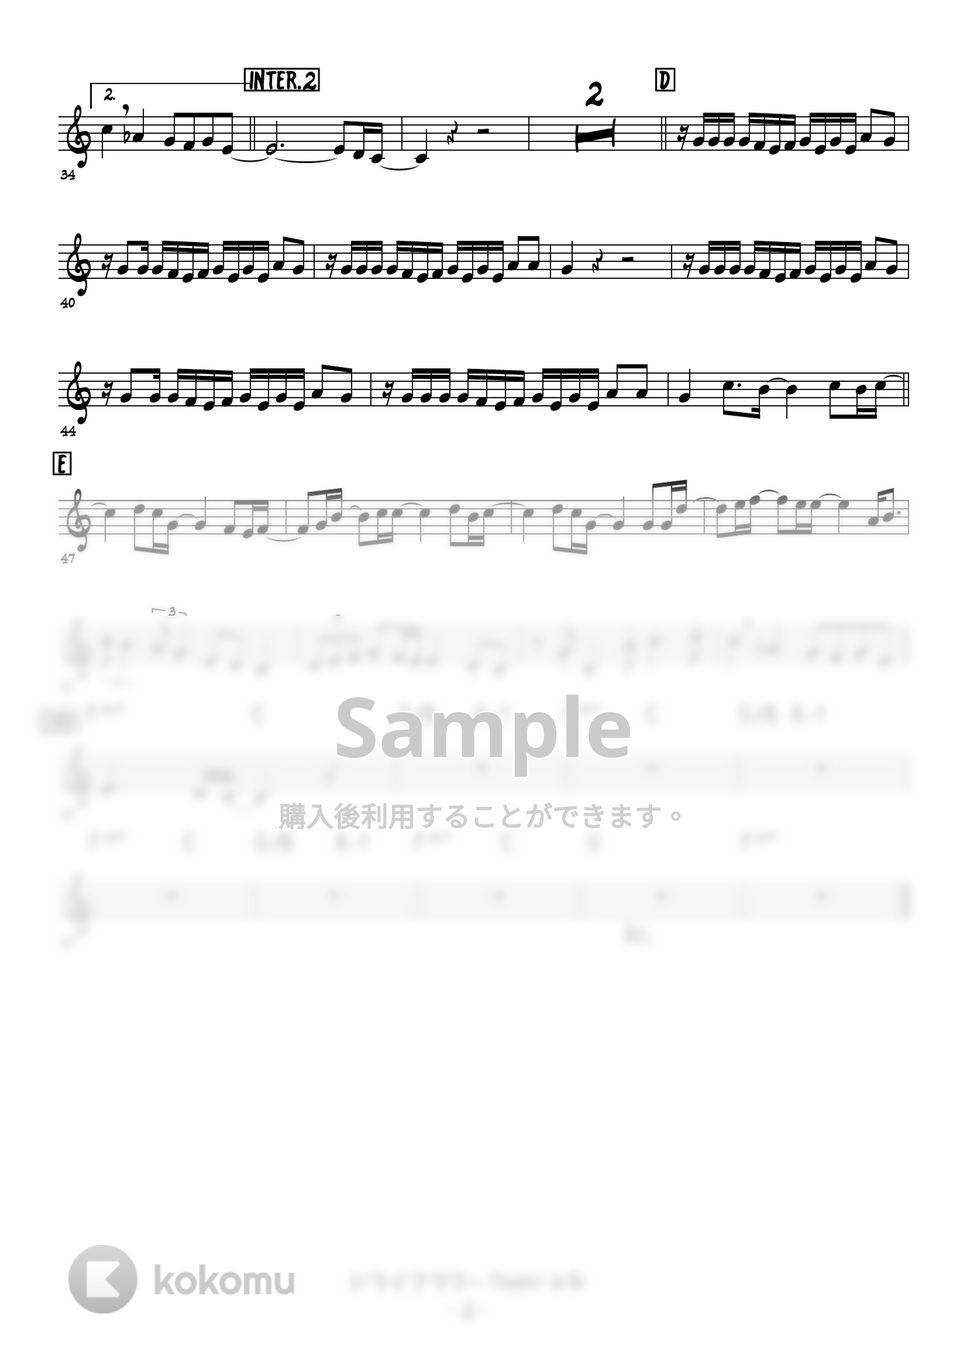 優里 - ドライフラワー (メロディー楽譜) by 高田将利